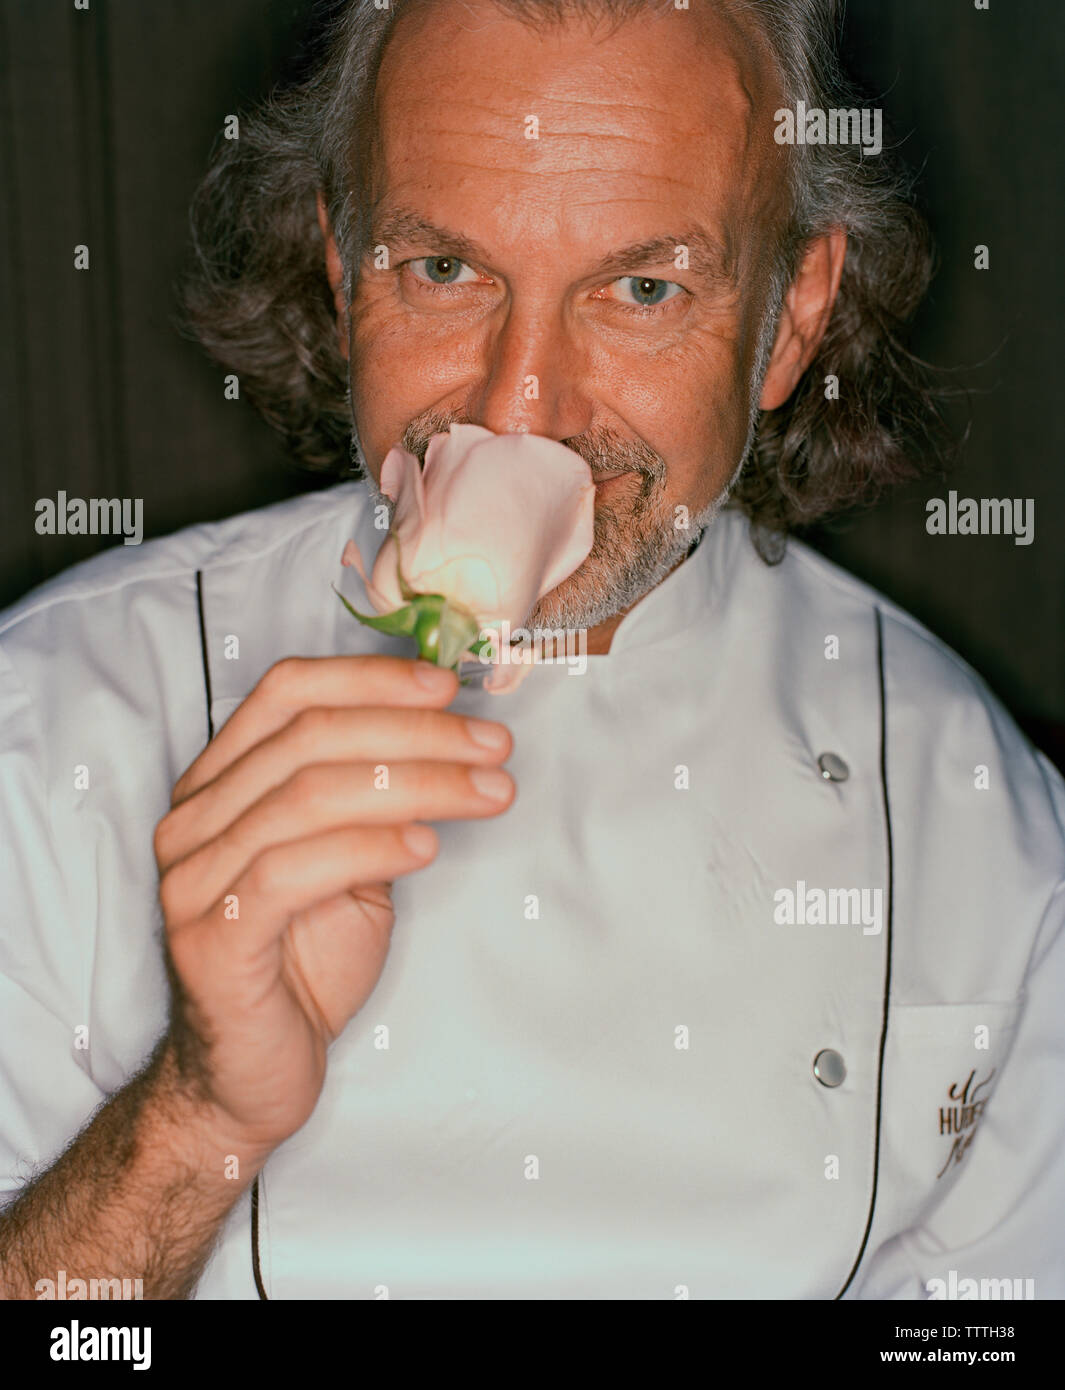 USA, Nevada, Chef Hubert Keller smelling pink flower, close-up, portrait Banque D'Images